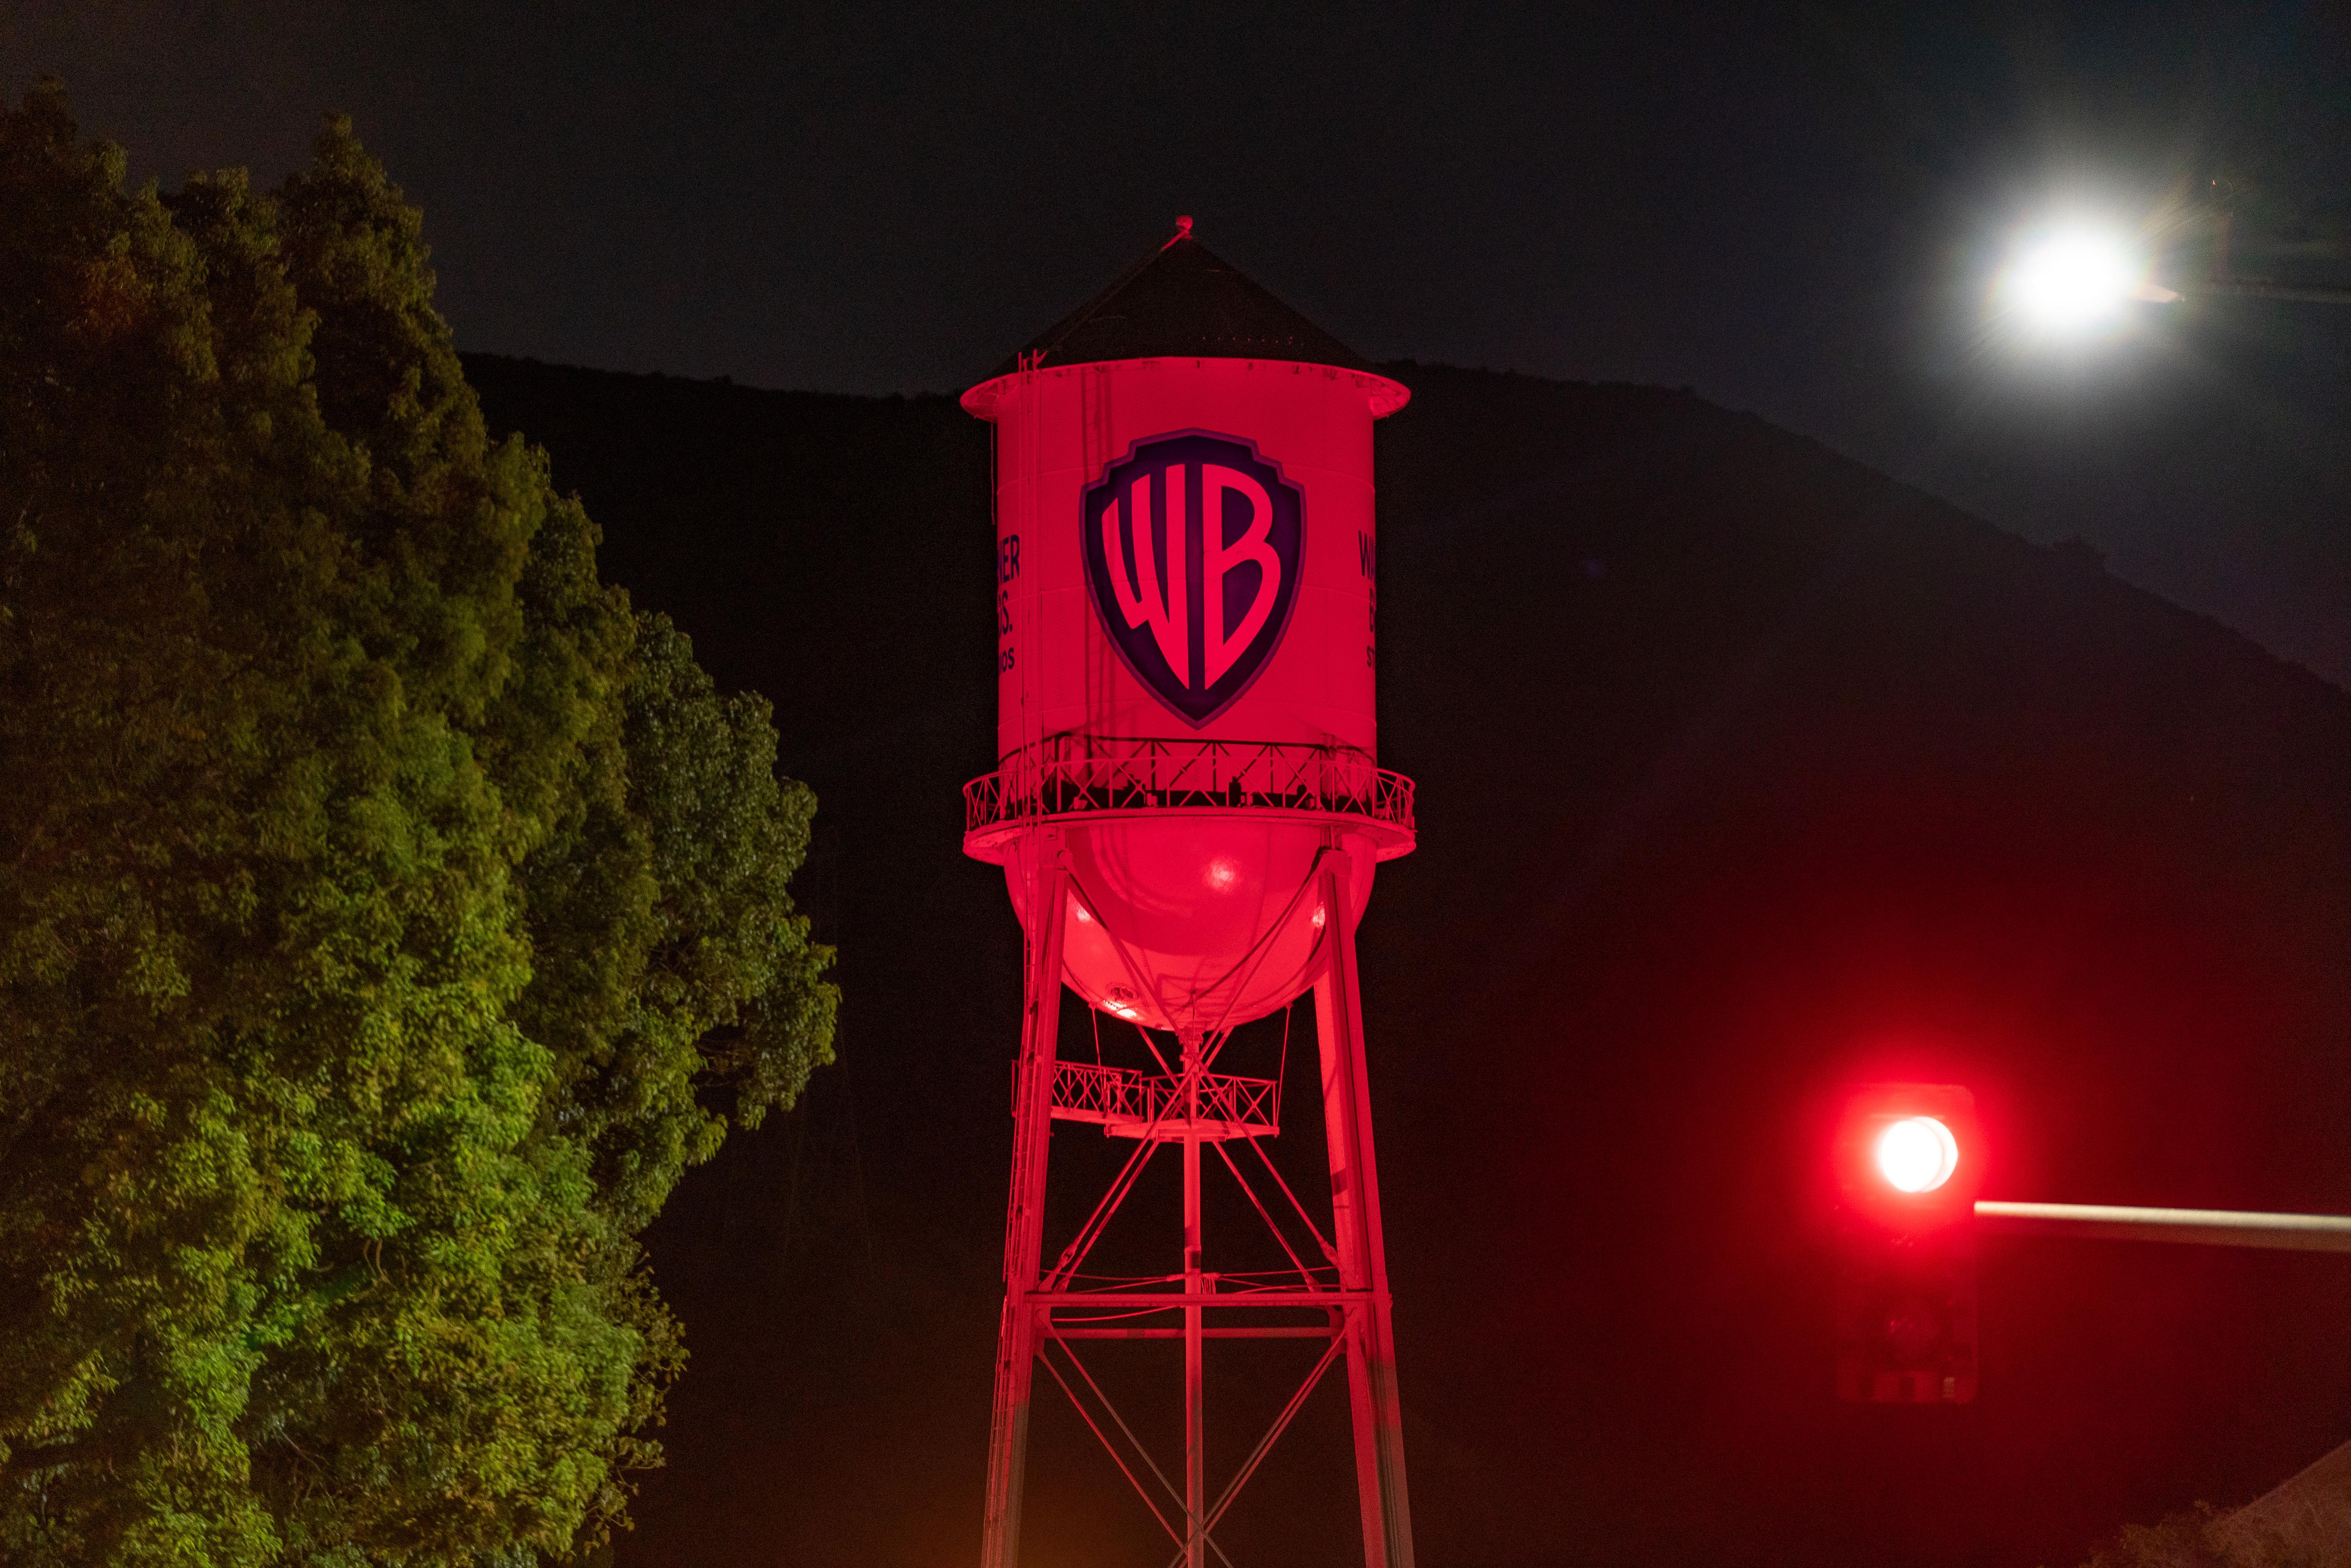 Warner Bros water tower